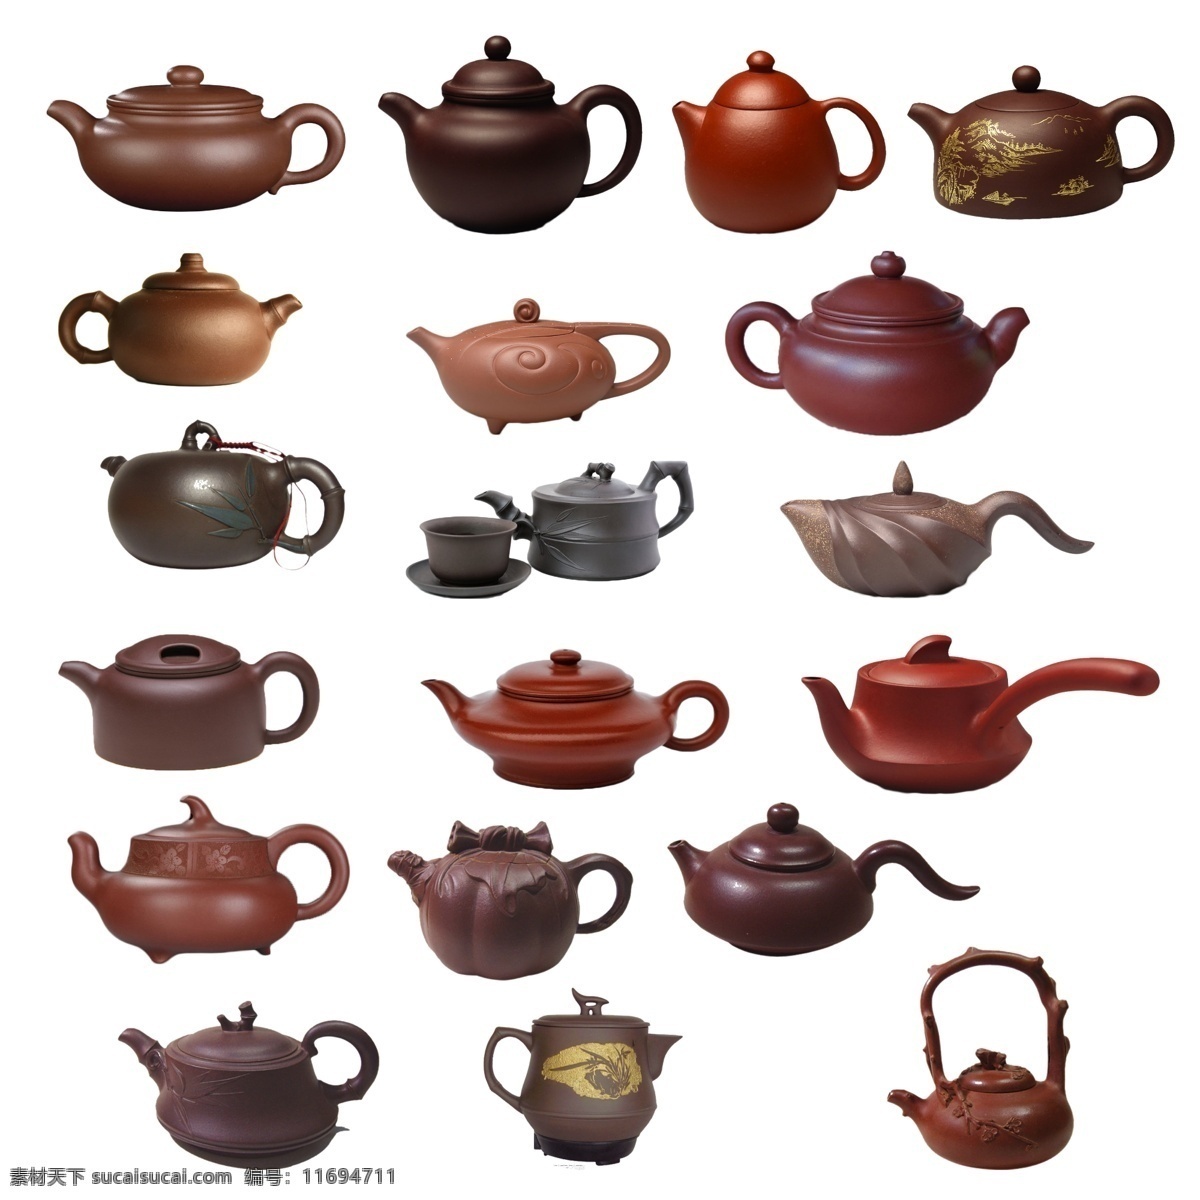 茶壶茶杯 茶杯 绿茶 一杯茶 中国风素材 中国风笔墨 中国风 陶瓷茶壶 茶壶素材 茶杯素材 茶具用品 茶具素材 煮茶 茶叶素材